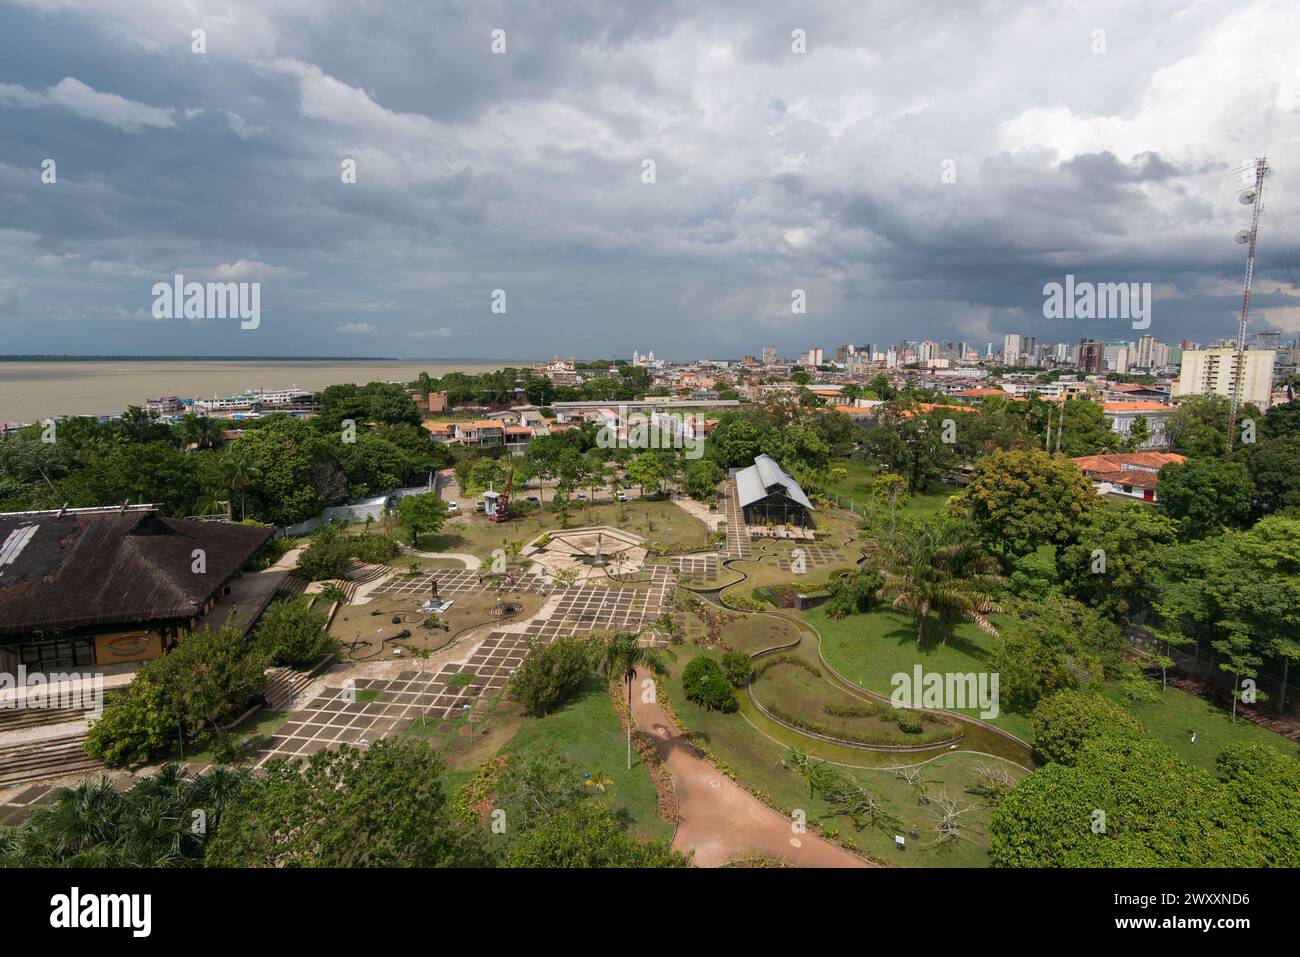 Aerial View of Mangal das Garças Park in Belém City, Brazil Stock Photo